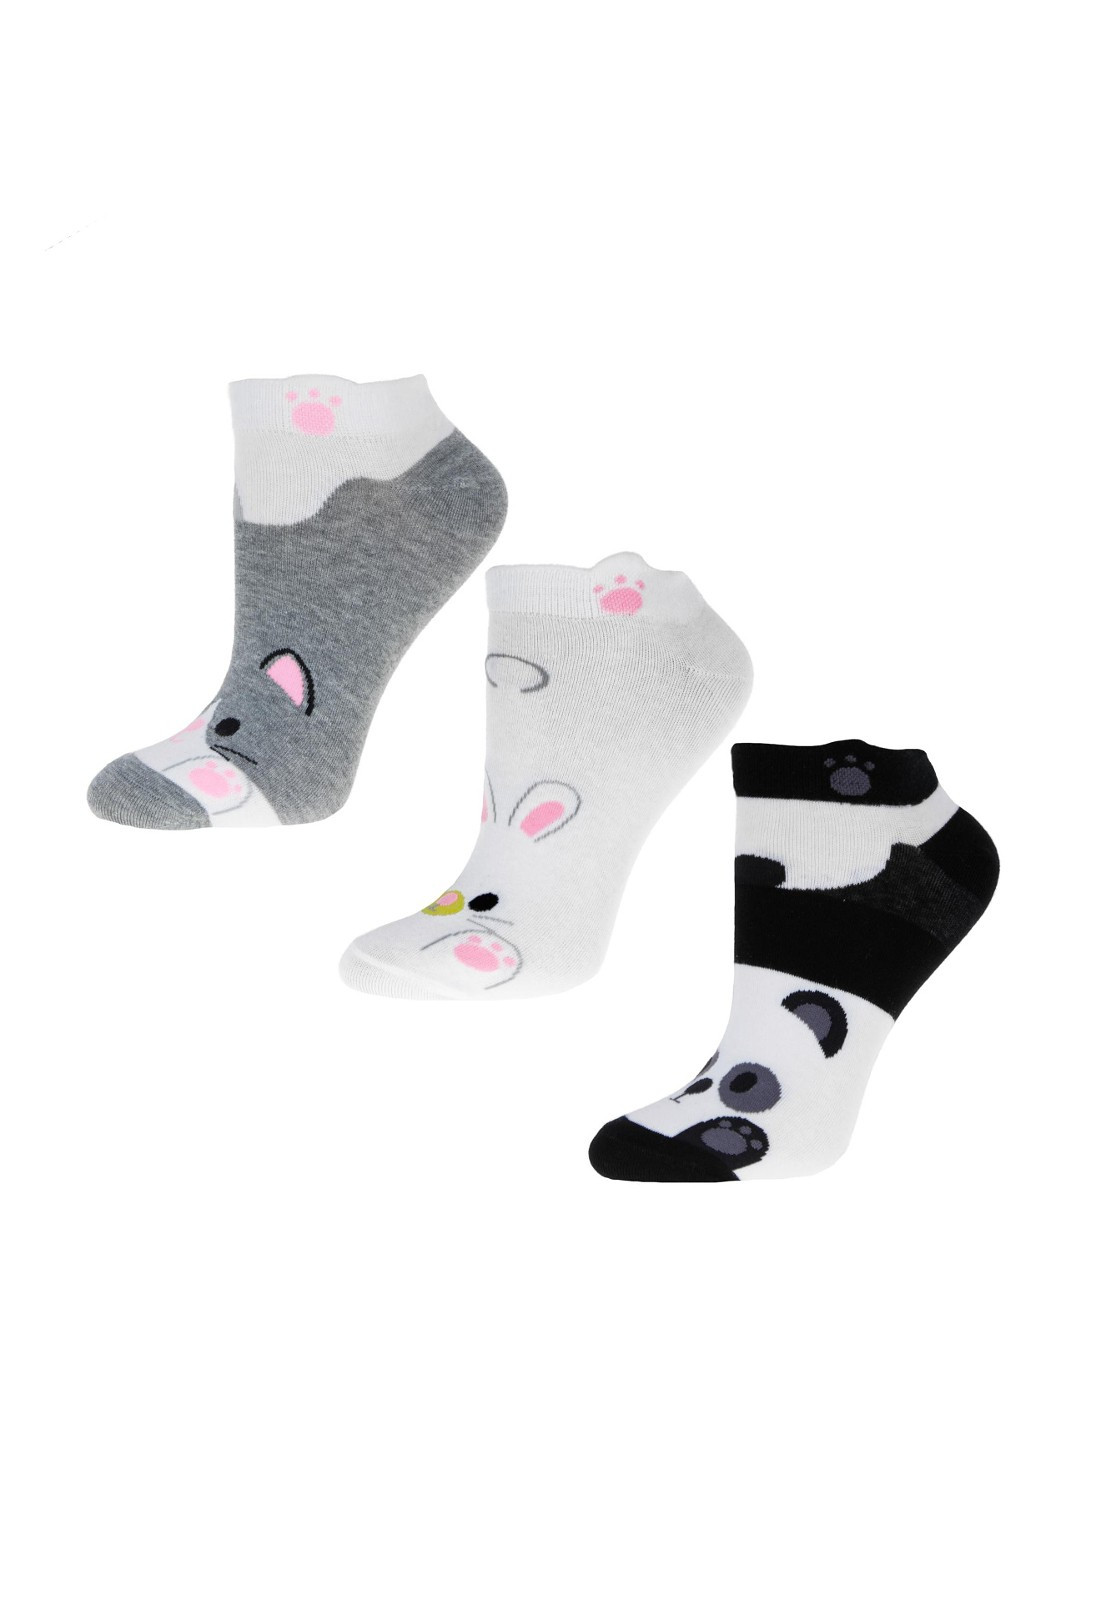 Dámské ponožky Moraj CSD240-041 Zvířátka A'3 35-41 směs barev 38-41